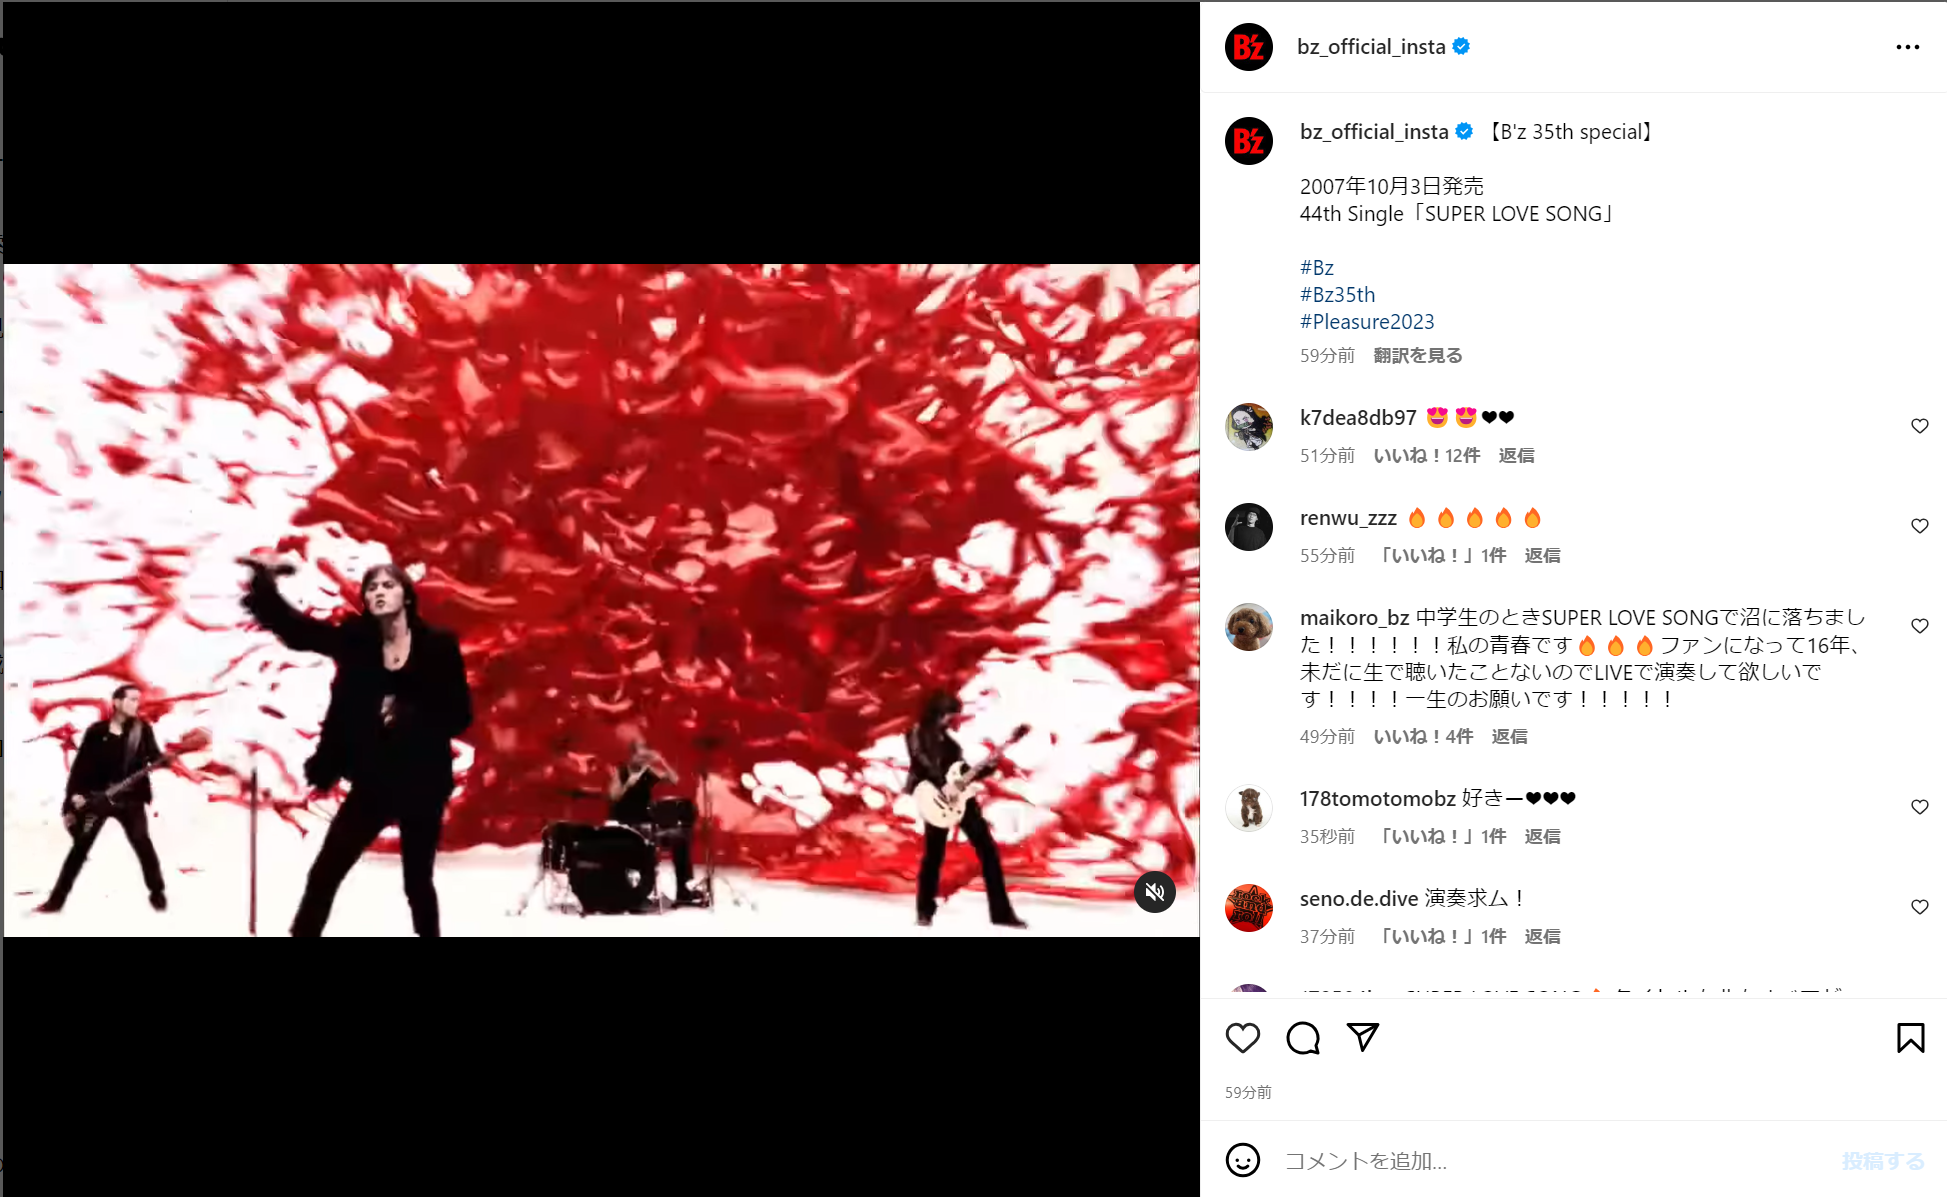 B'z公式Instagramで公開された「SUPER LOVE SONG」のミュージック・ビデオ